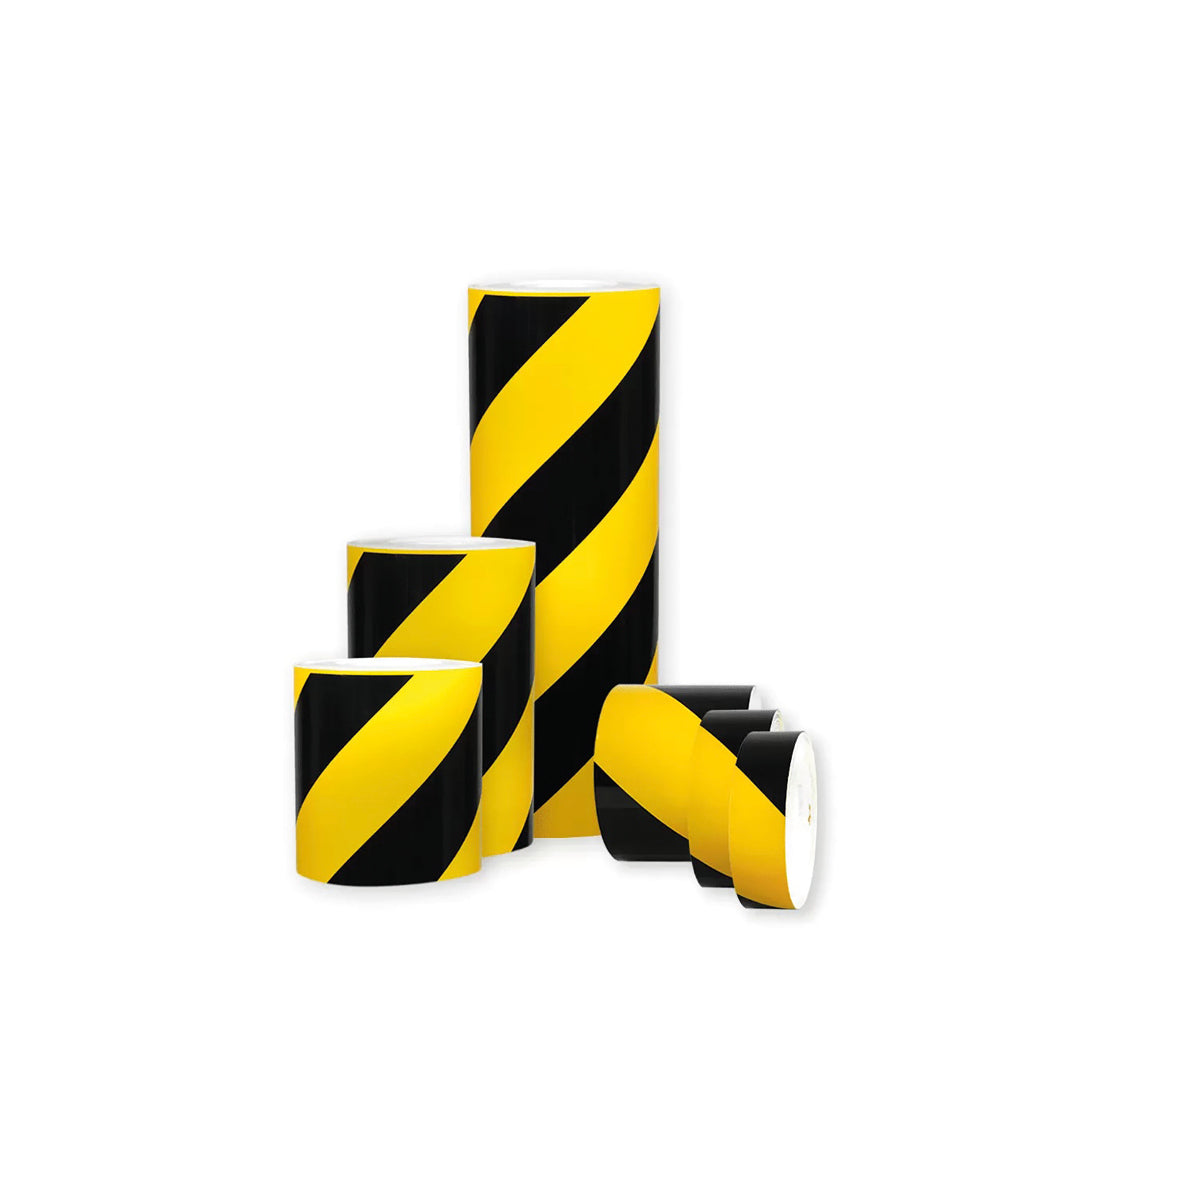 Warnmarkierungsband R1, für Fahrzeuge, R1, gelb-schwarz, 10 m x 600 mm, rechtsweisend